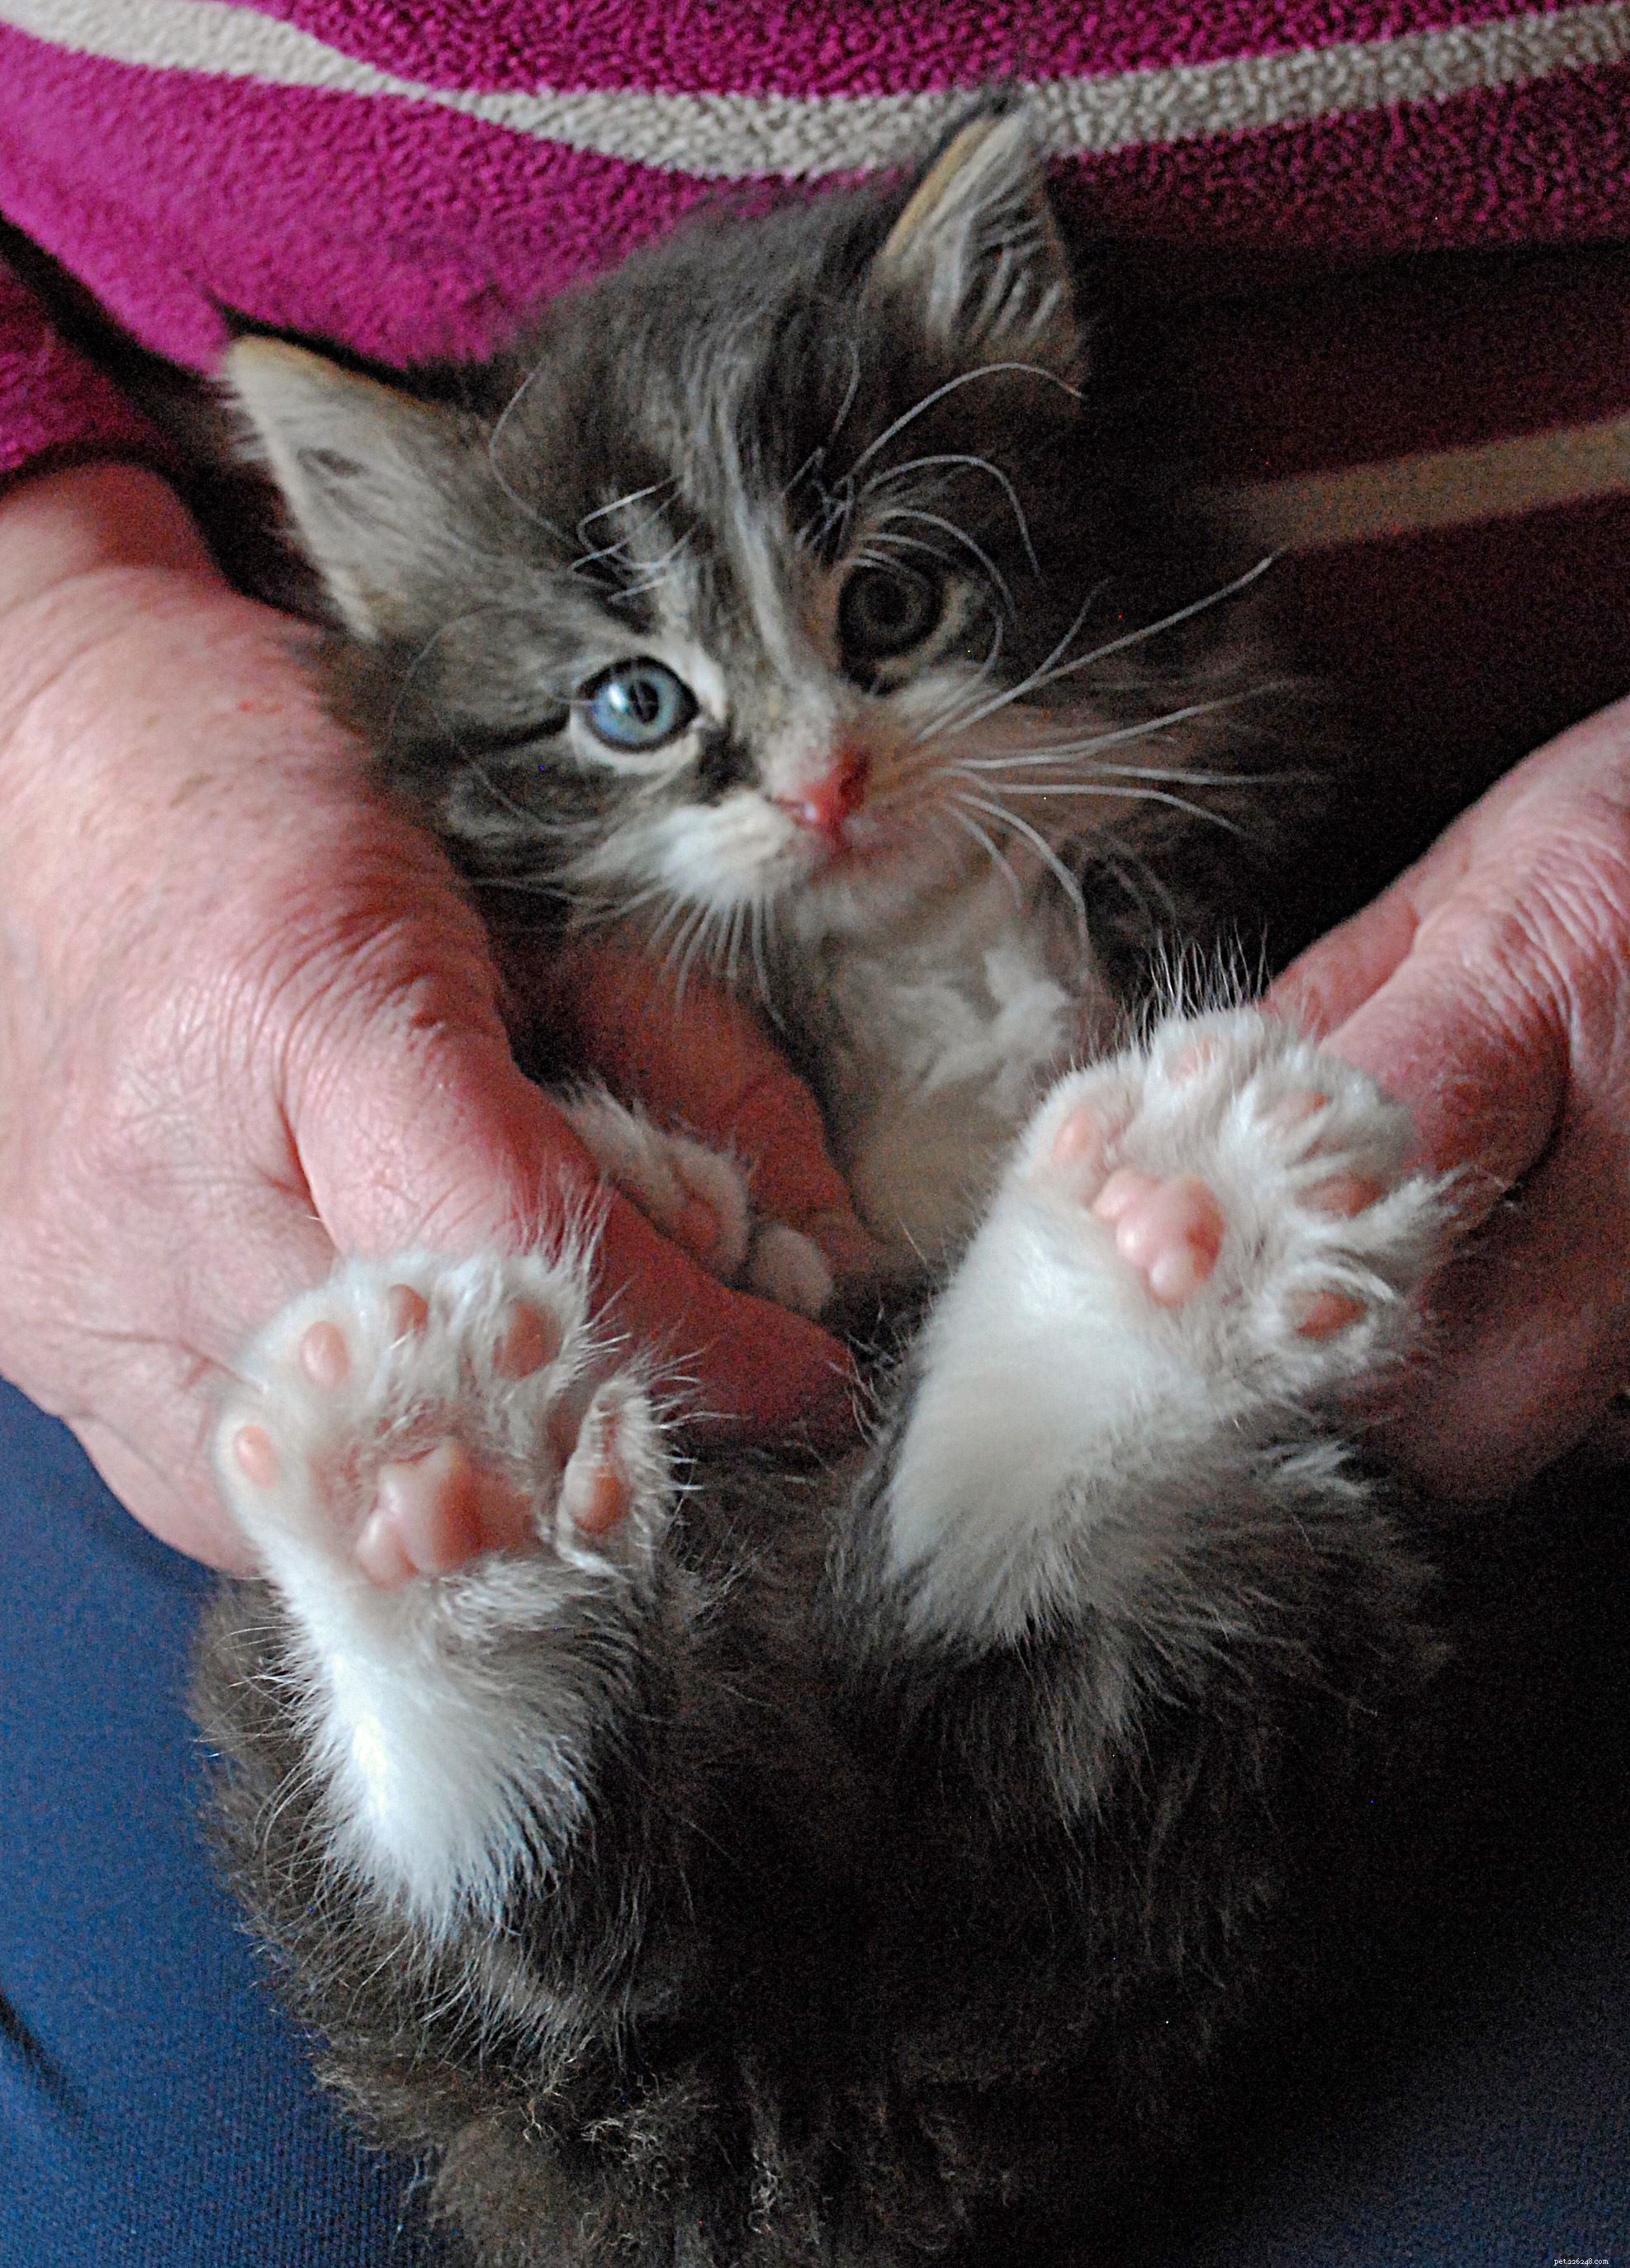 Kotě Fingle a jeho polydaktylní příbuzní byli přemístěni do jedné pobočky Ochrany koček